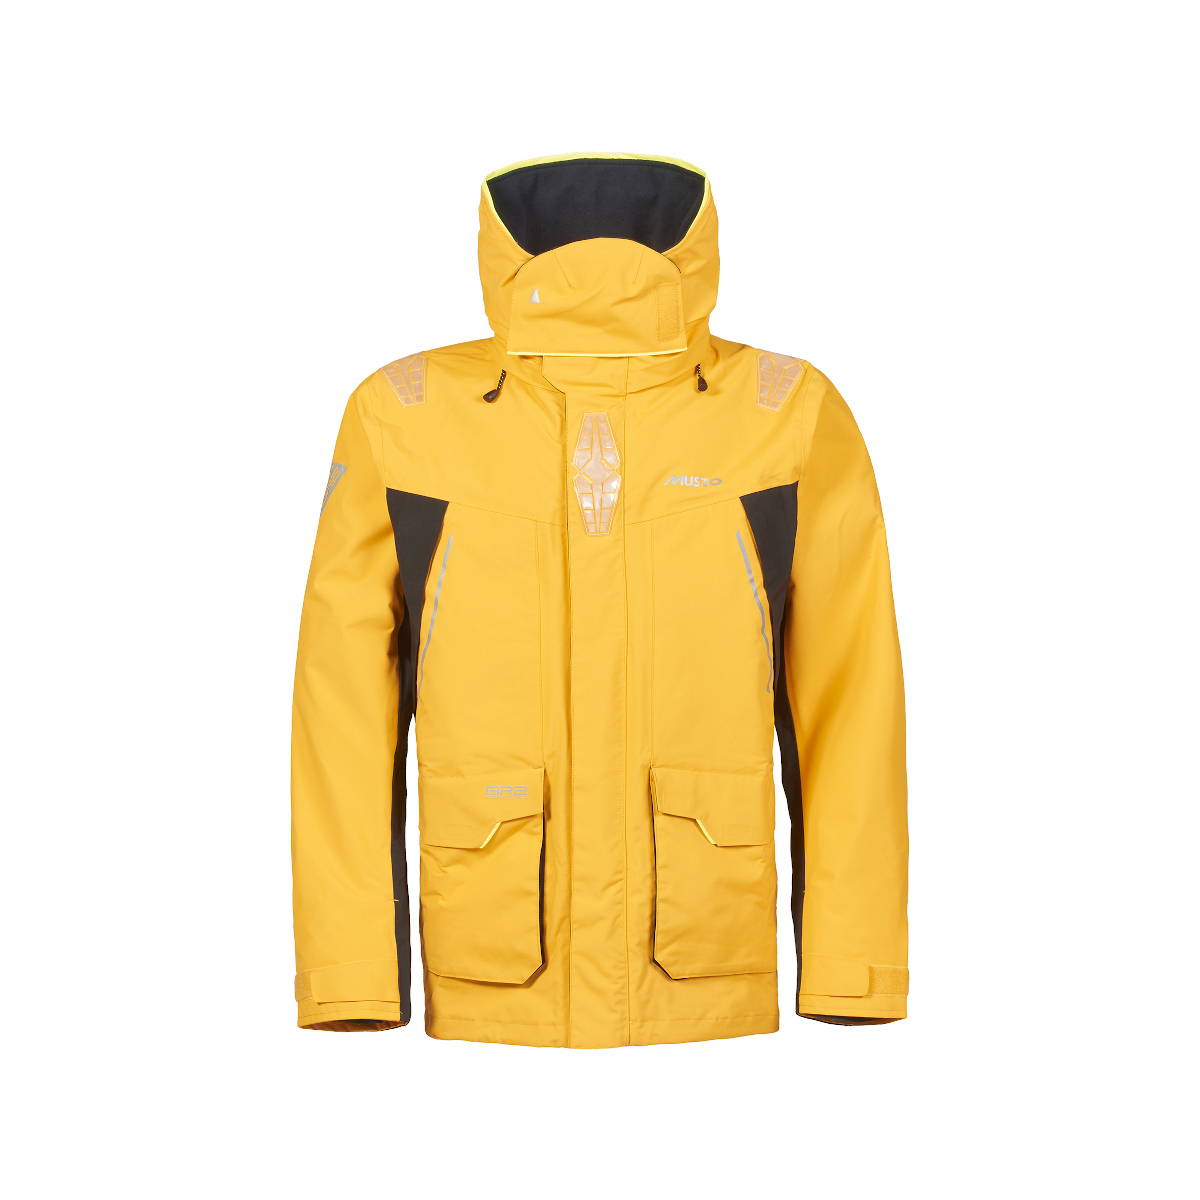 Musto BR2 veste de voile Offshore 2.0 homme jaune, taille XL